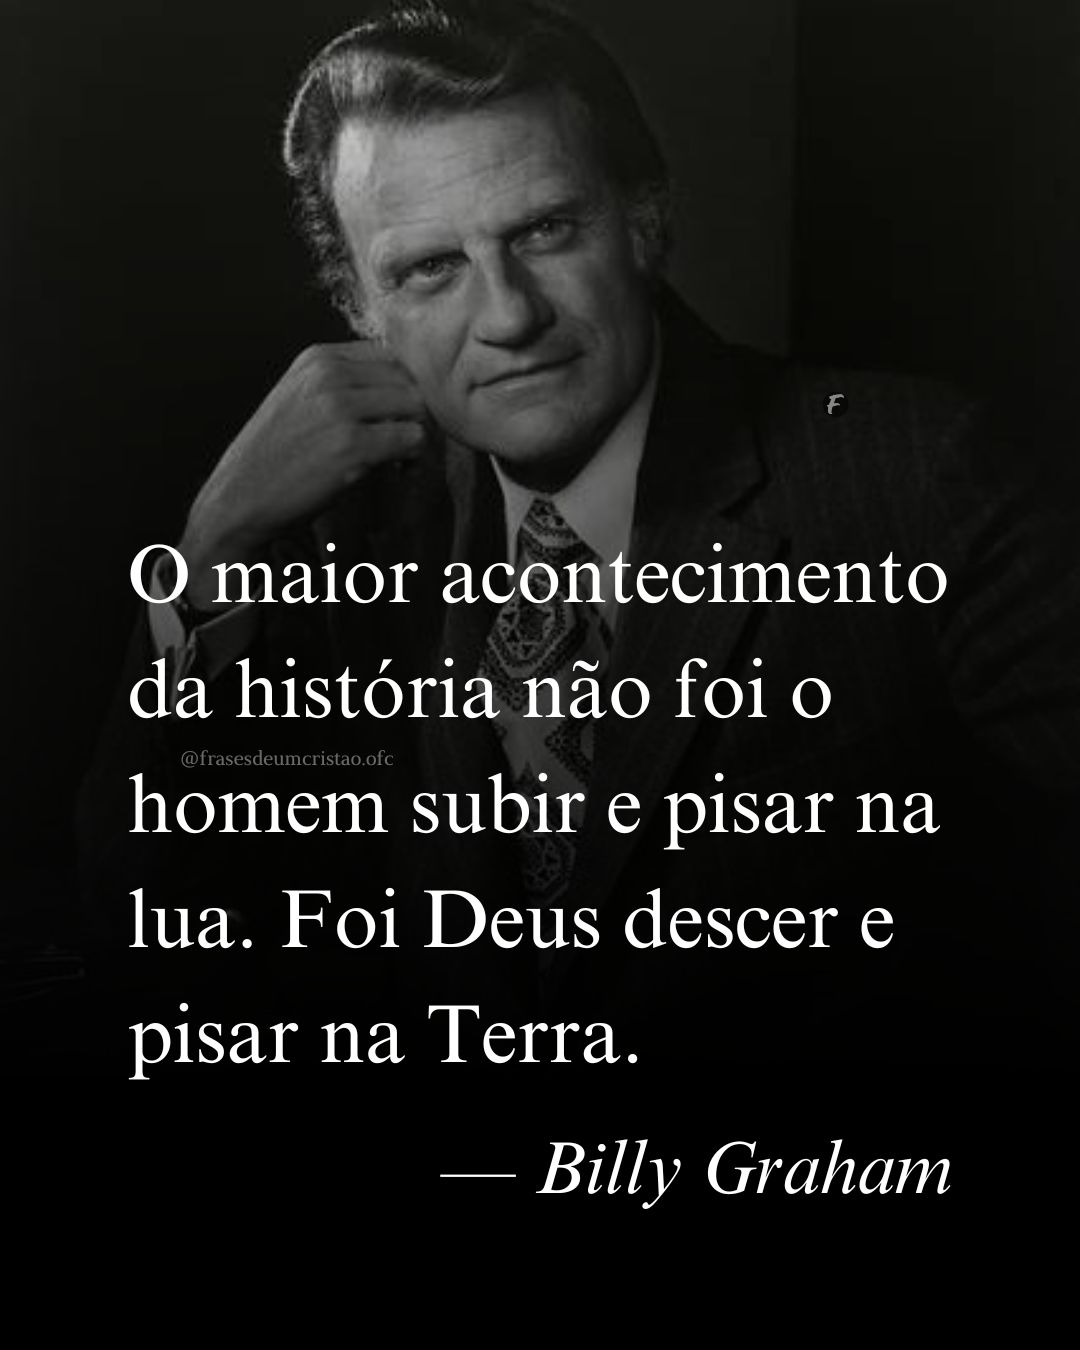 O maior acontecimento da história não foi o homem subir e pisar na lua. Foi Deus descer e pisar na Terra. — Billy Graham